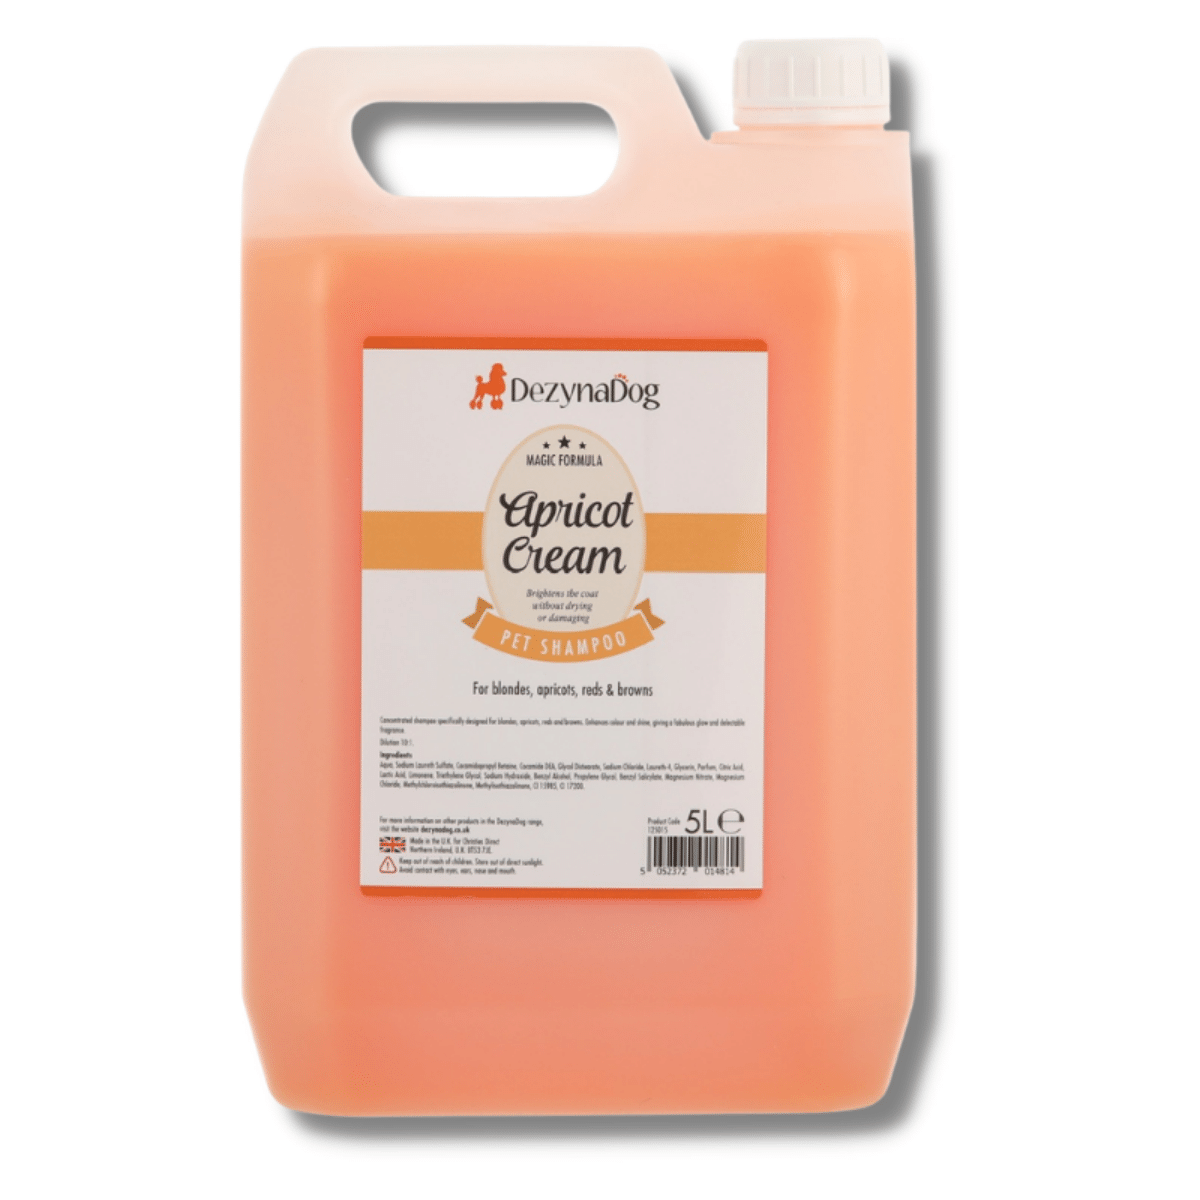 DezynaDog Shampoo: Apricot Cream